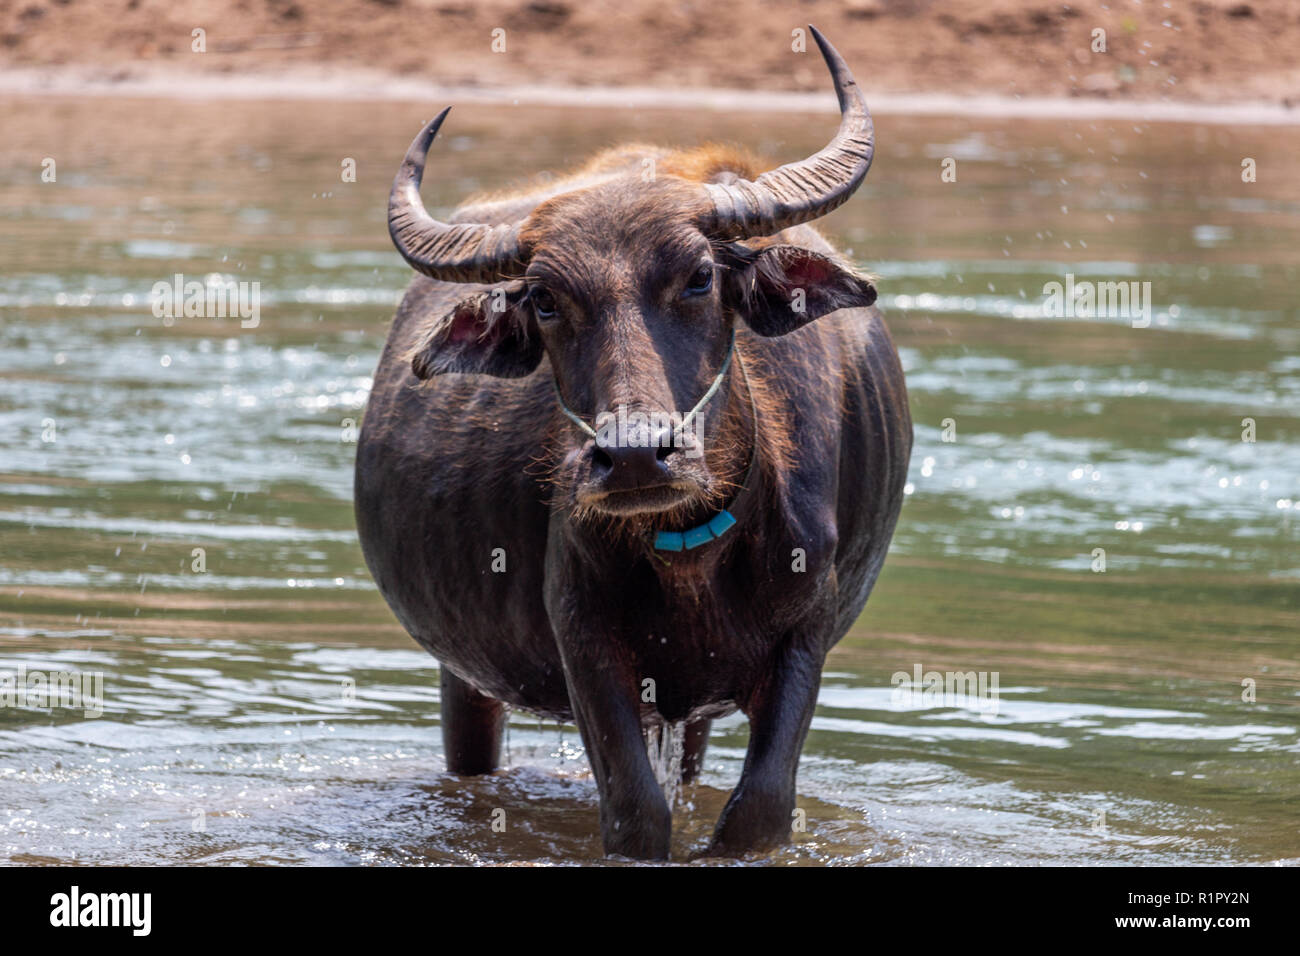 Don Det, Laos - Aprile 22, 2018: bufalo selvatico nelle acque del fiume Mekong sulle isole 4000 zona vicino al confine cambogiano Foto Stock